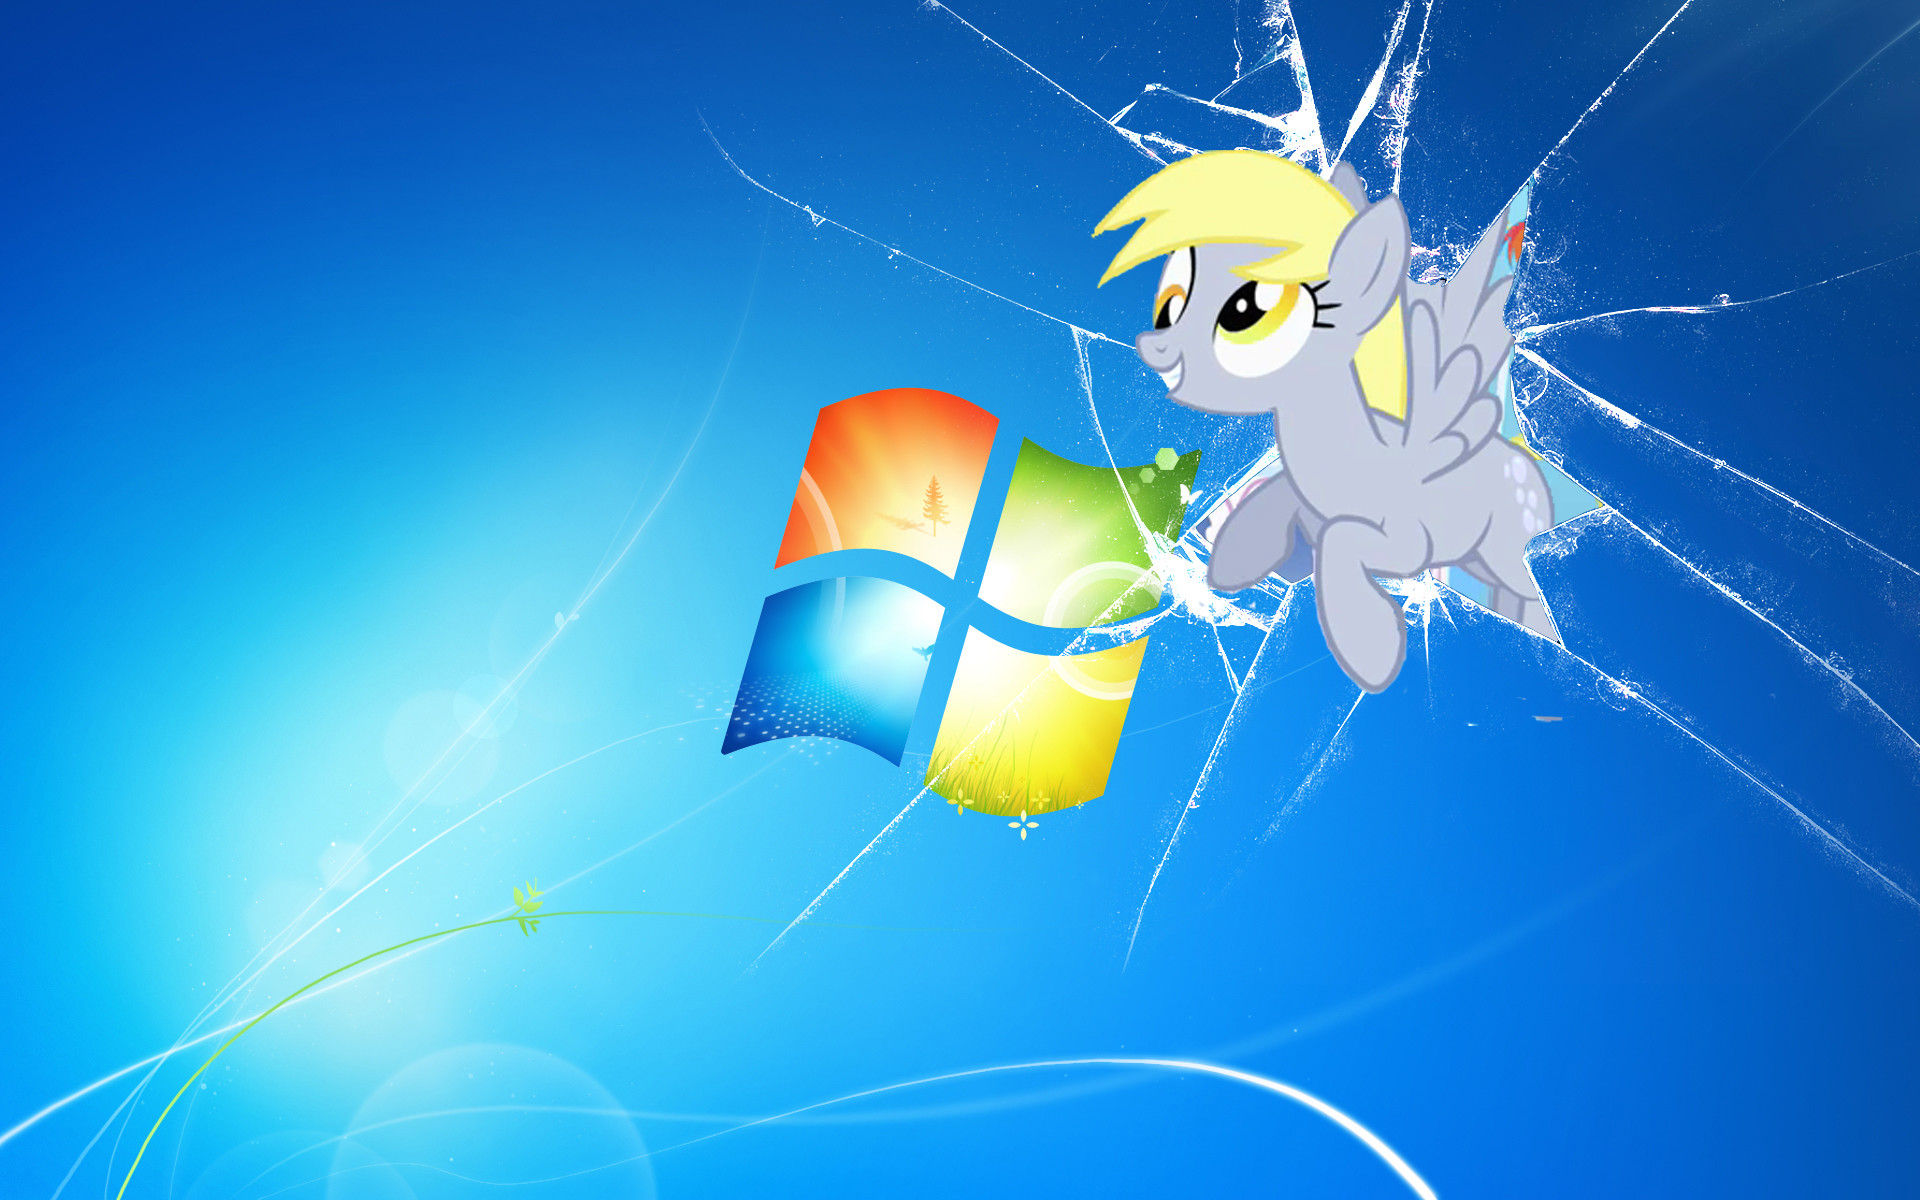 Windows 7 Broken Screen Wallpaper Hd , HD Wallpaper & Backgrounds